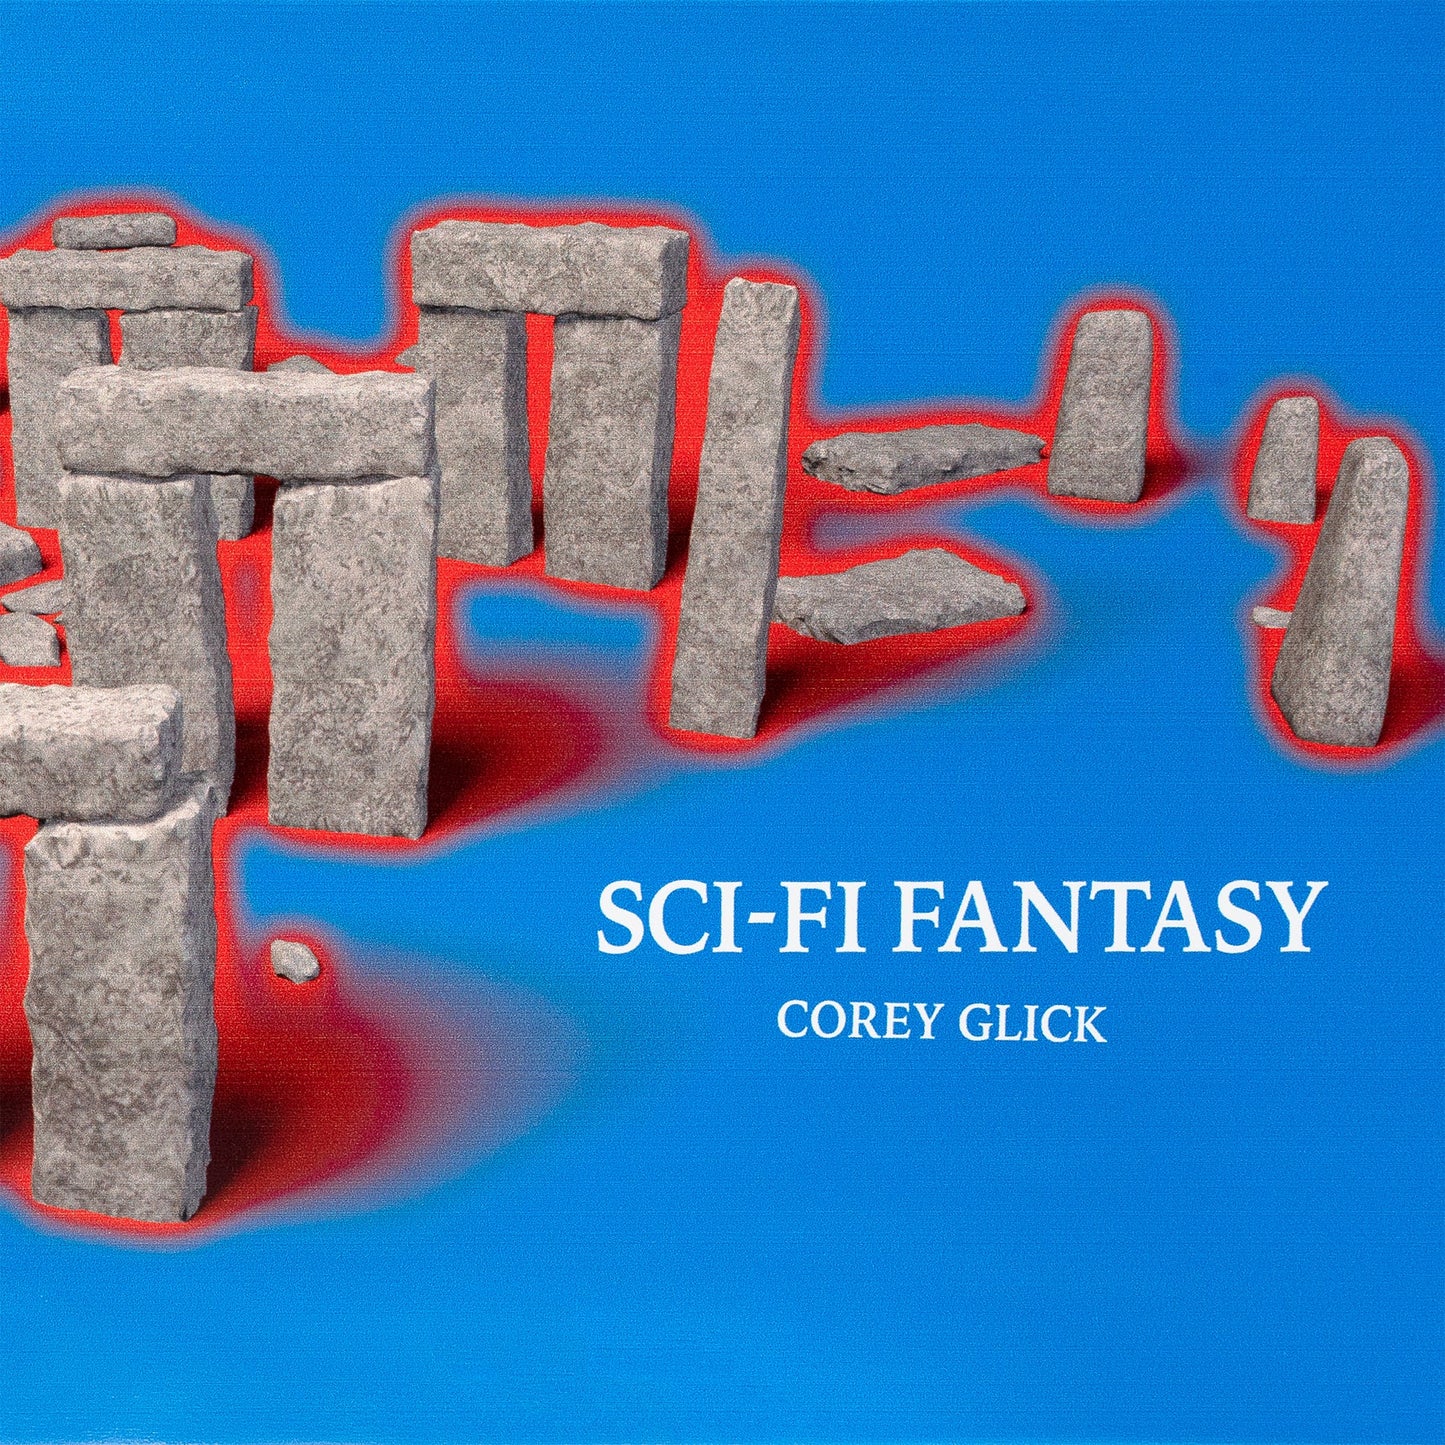 Sci Fi Fantasy - Corey Glick Deck - 8.38"